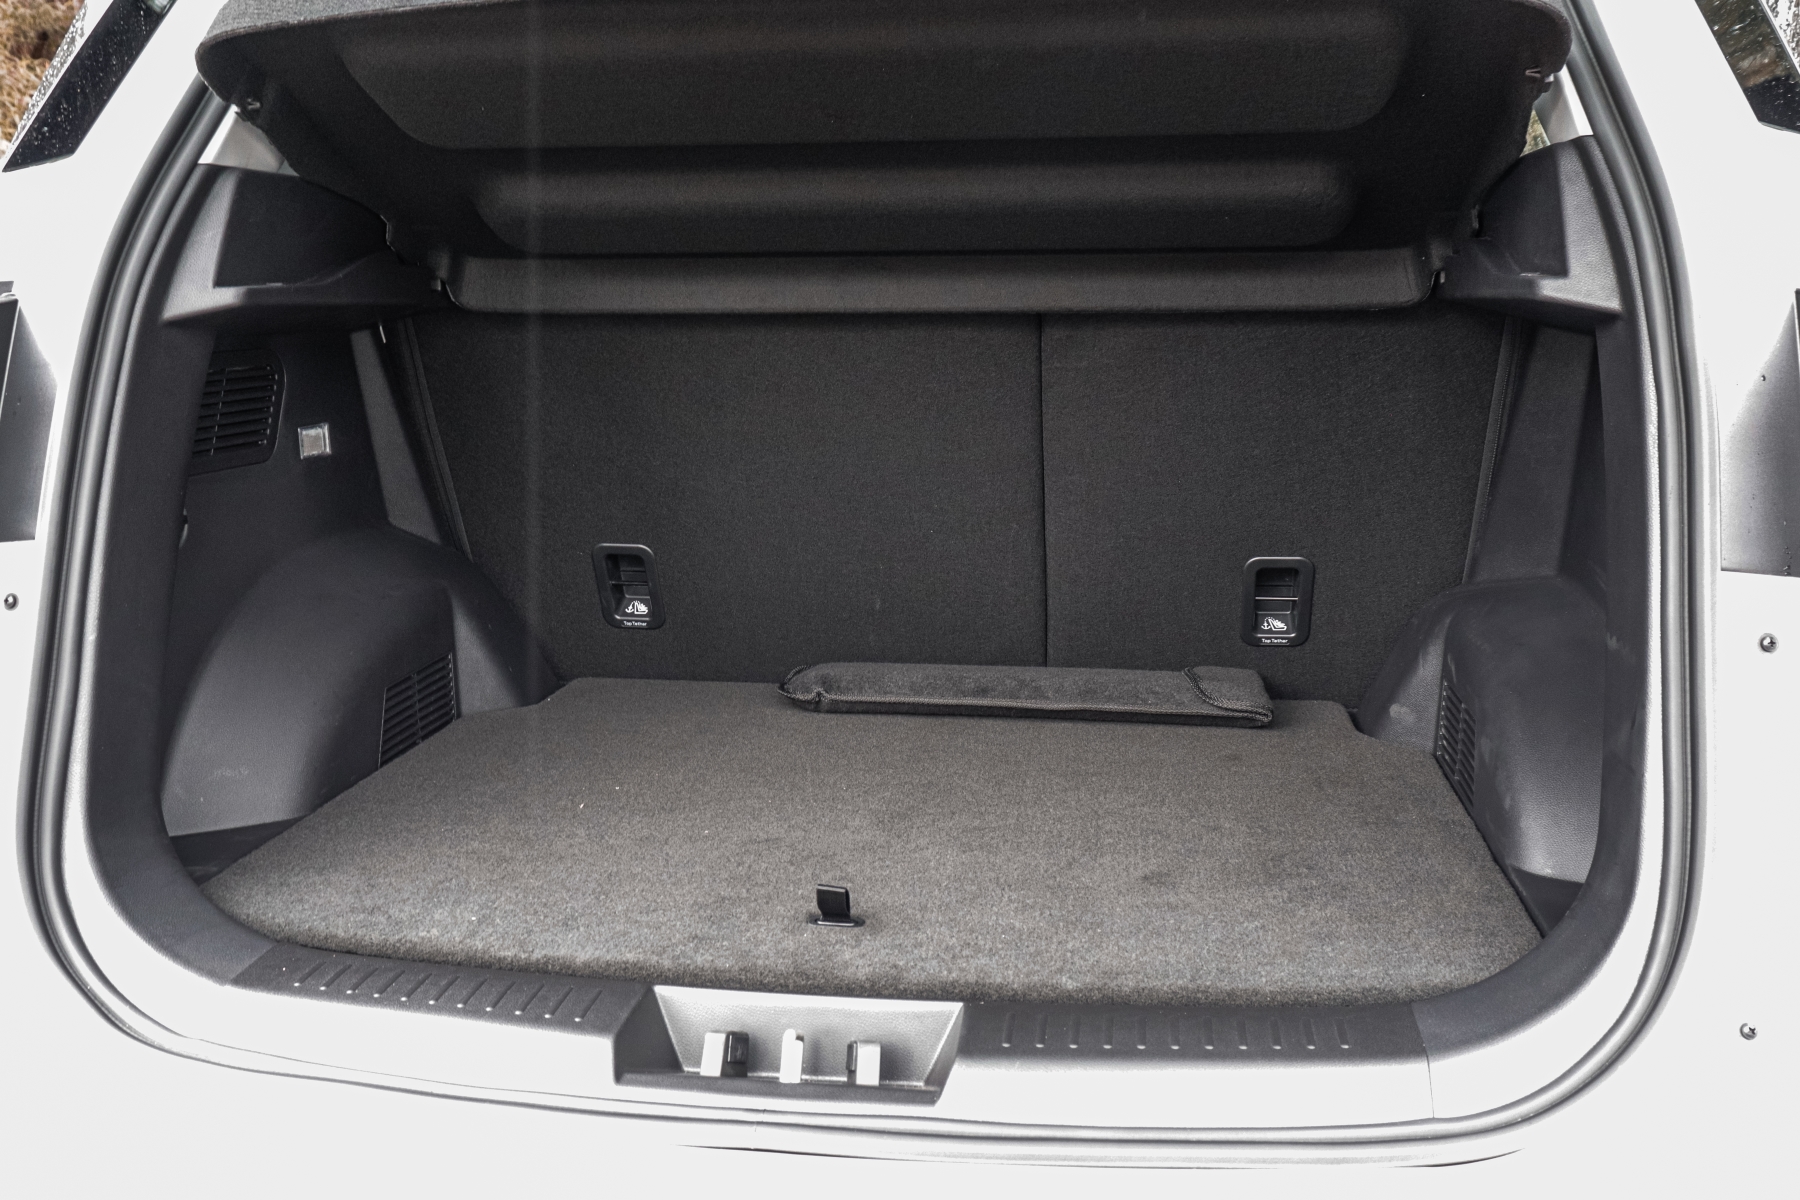 Caoa Chery Tiggo 5X Pro Hybrid modelo 2022 interior porta-malas branco no asfalto